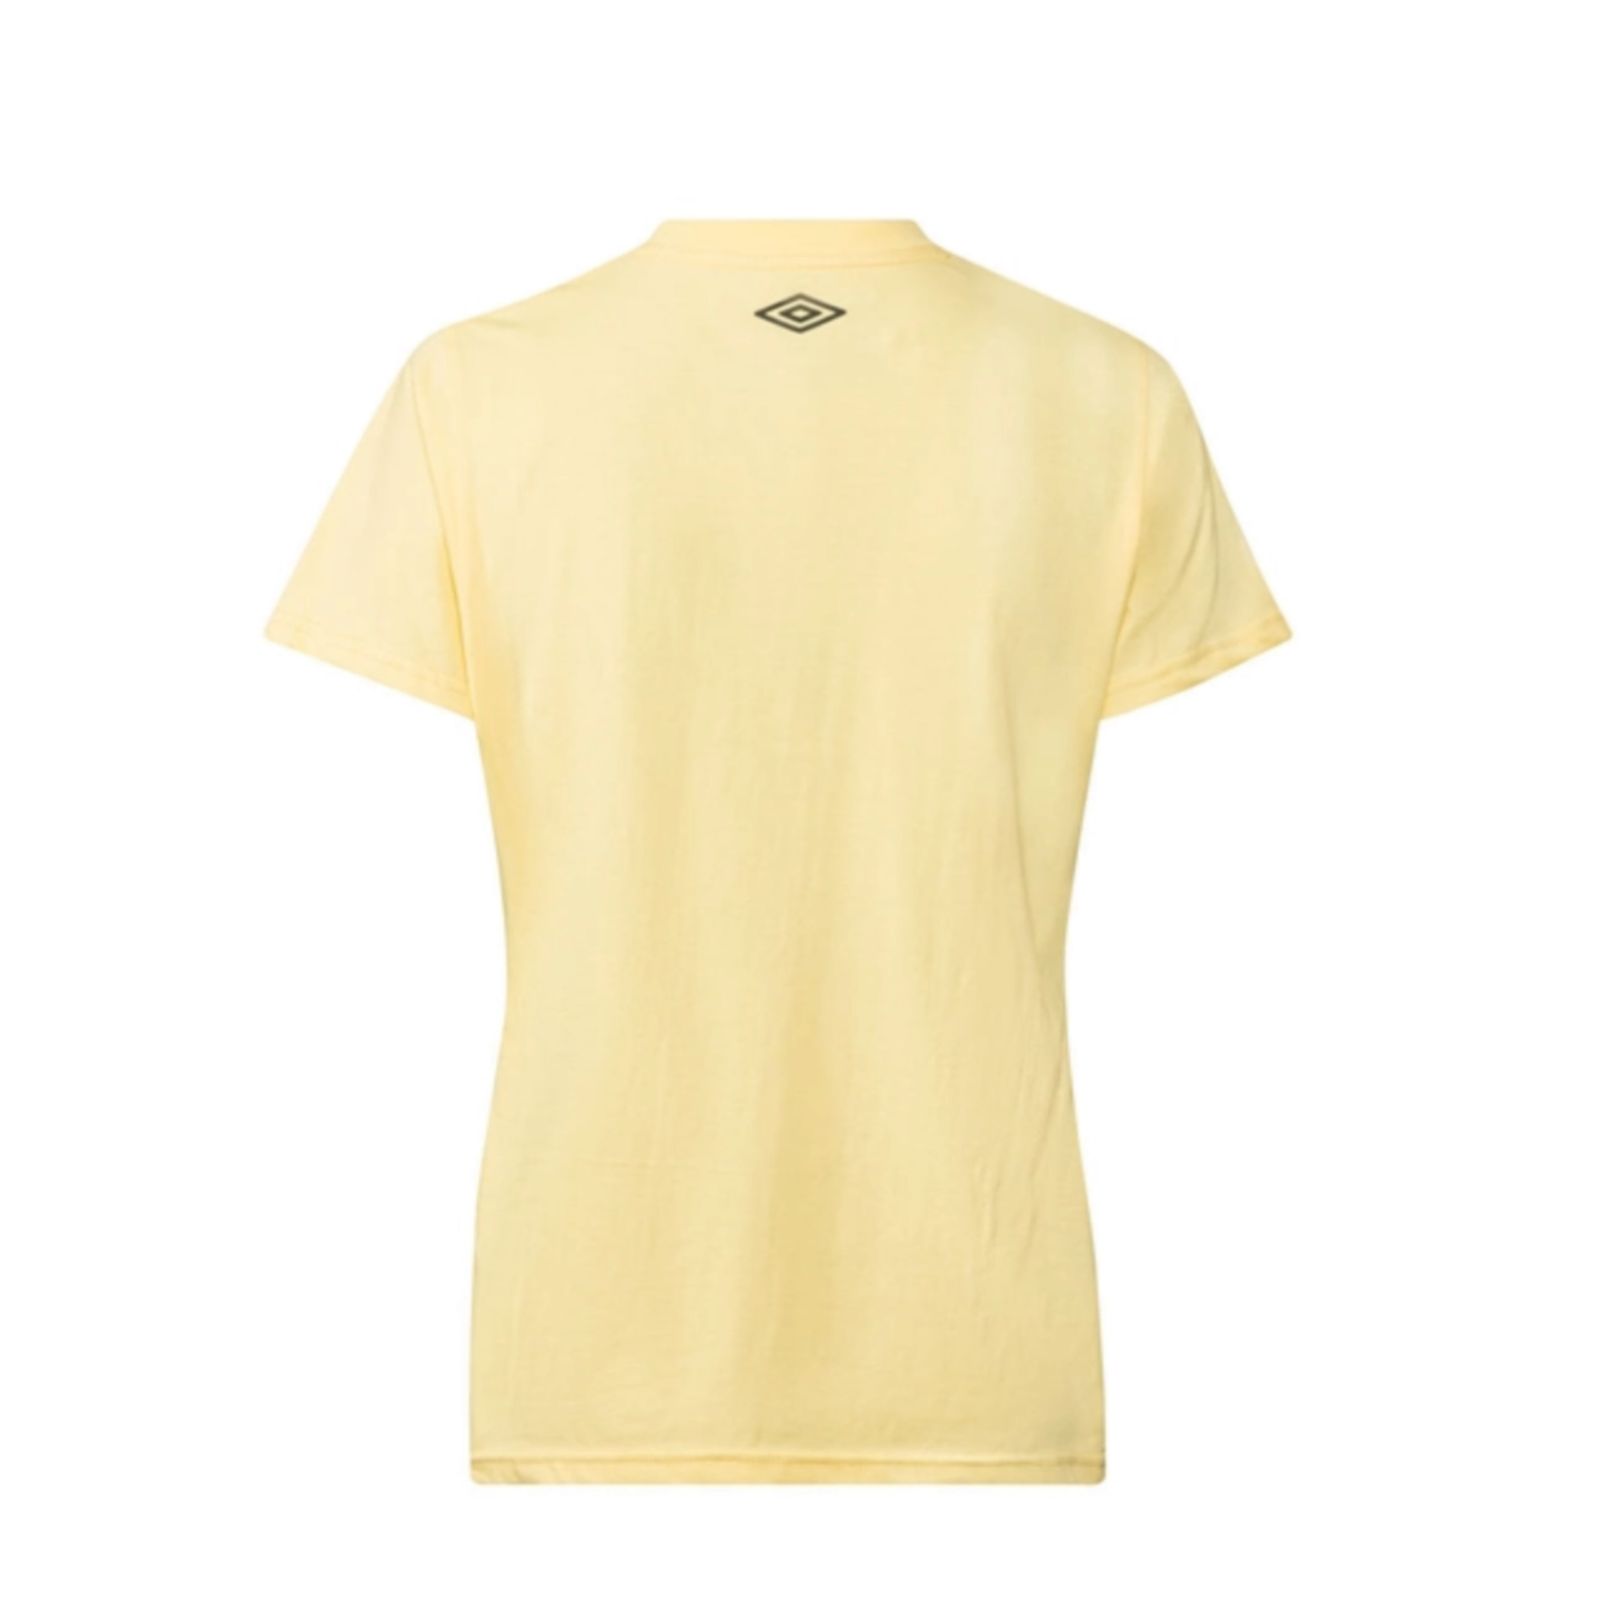 تی شرت آستین کوتاه زنانه آمبرو مدل Limone -  - 2